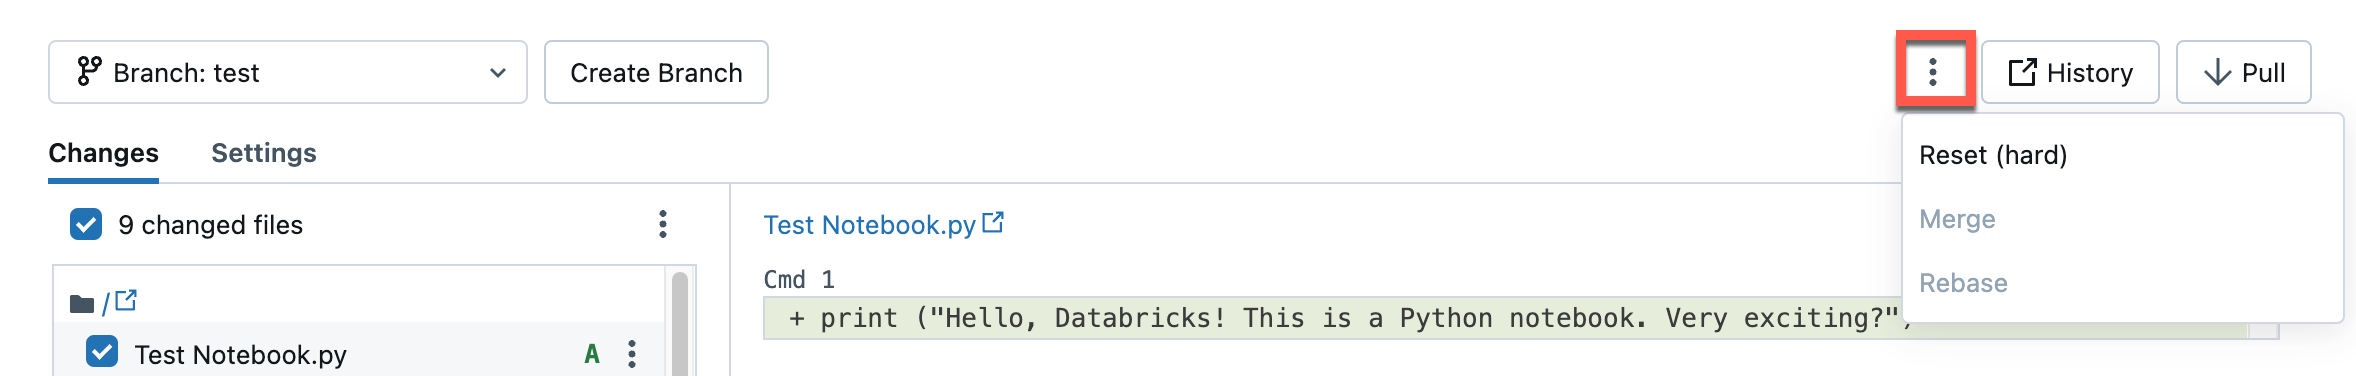 分支作業之 Git 資料夾對話框的下拉功能表。